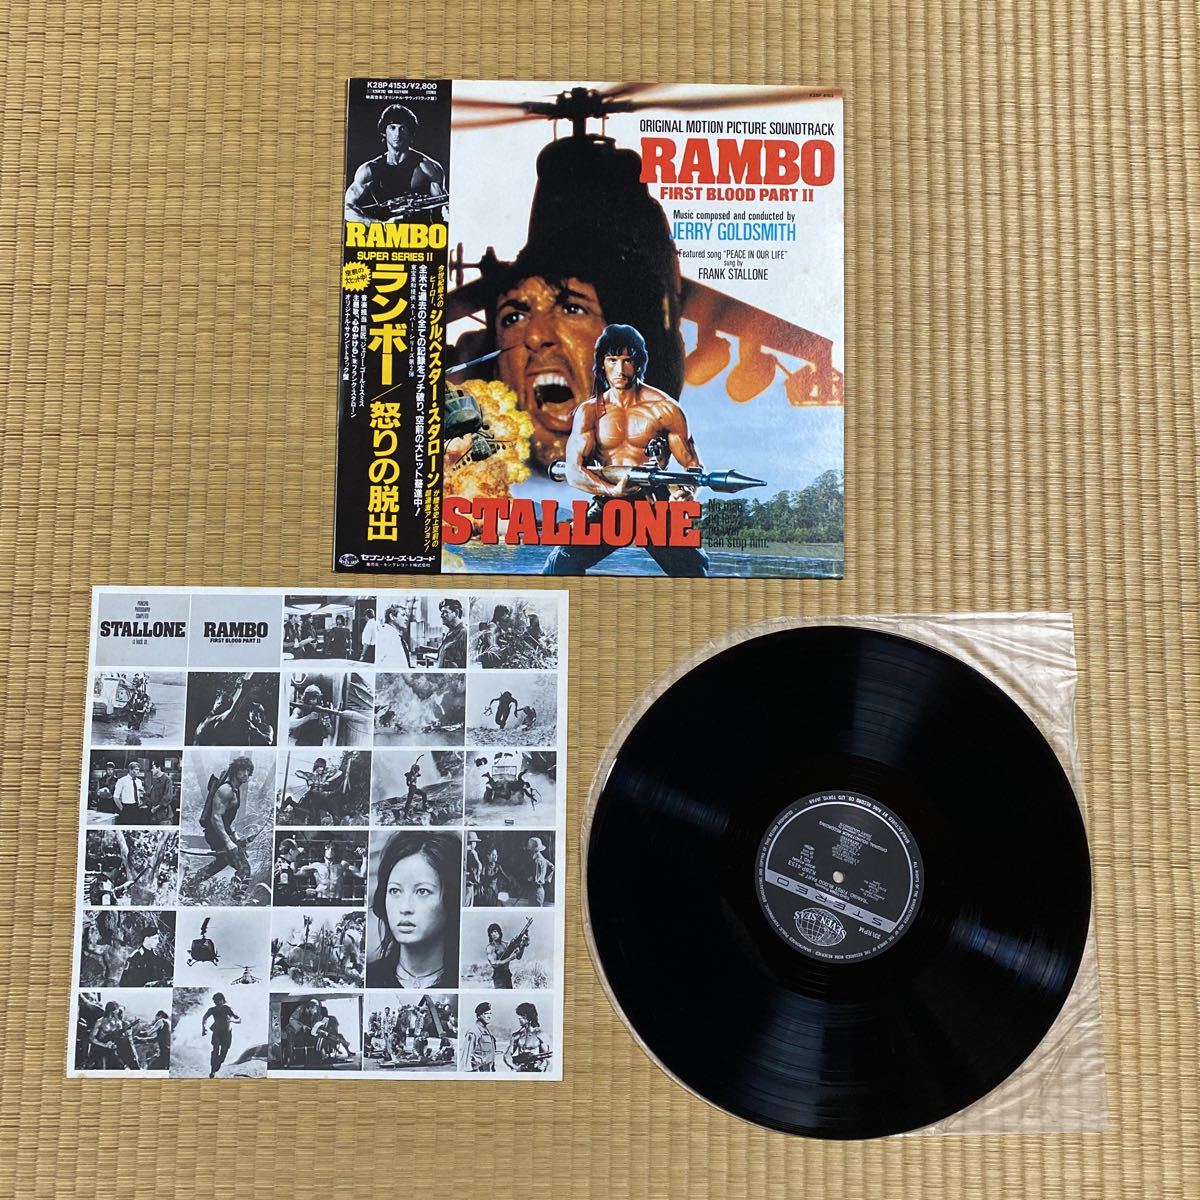  запись комплект домкрат -* чейнджер Rimbaud Champion ястреб /LP 4 шт. комплект фильм Hong Kong международный полиция OBI Jackie Chan Kong-sang vinyl lp